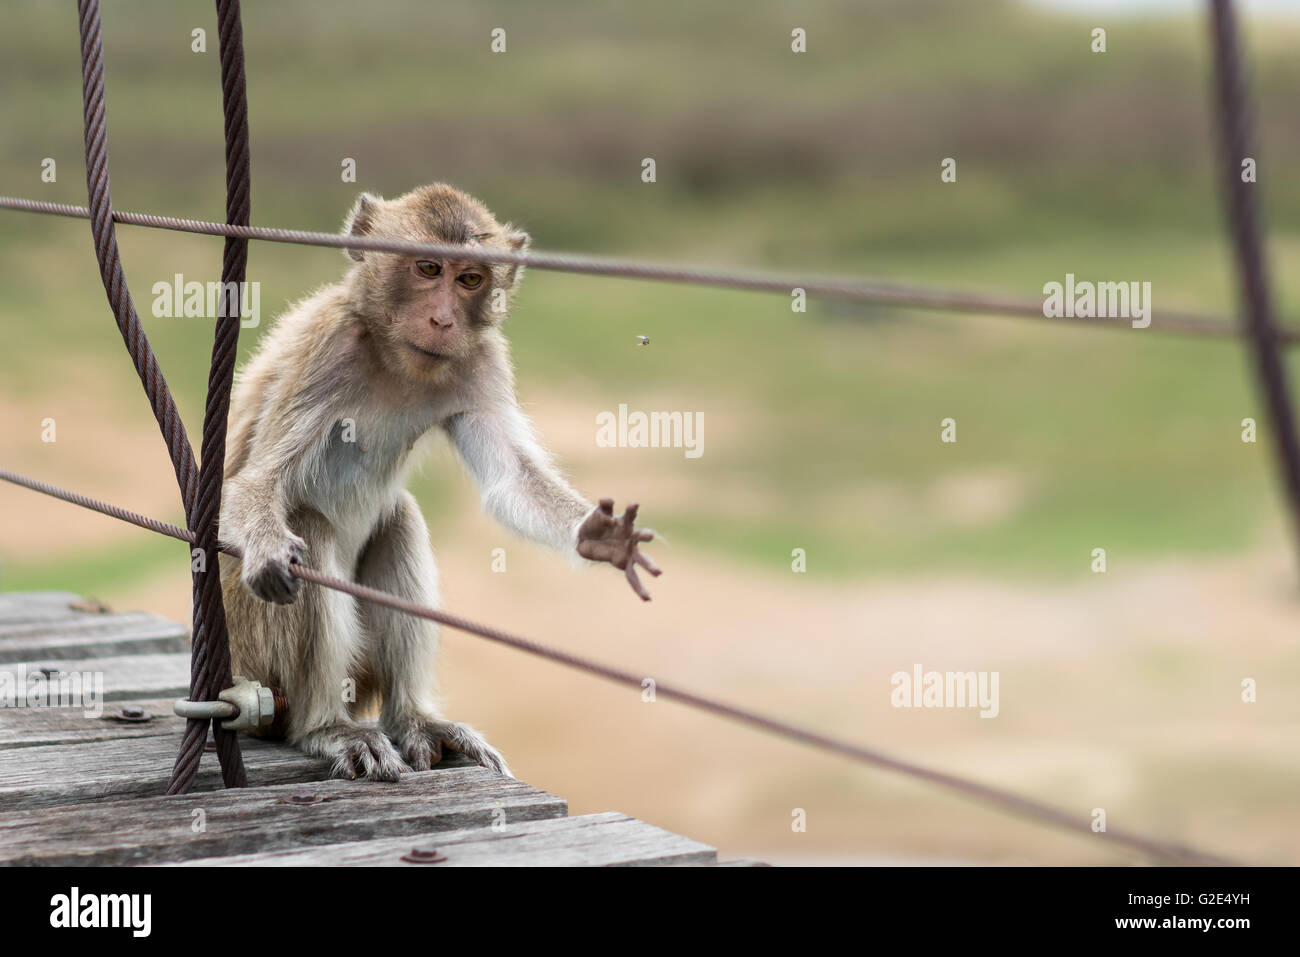 Hungriger Affe, verwundetes Tier fangen eine Fliege zu essen, Hunger oder Überleben-Konzept Stockfoto